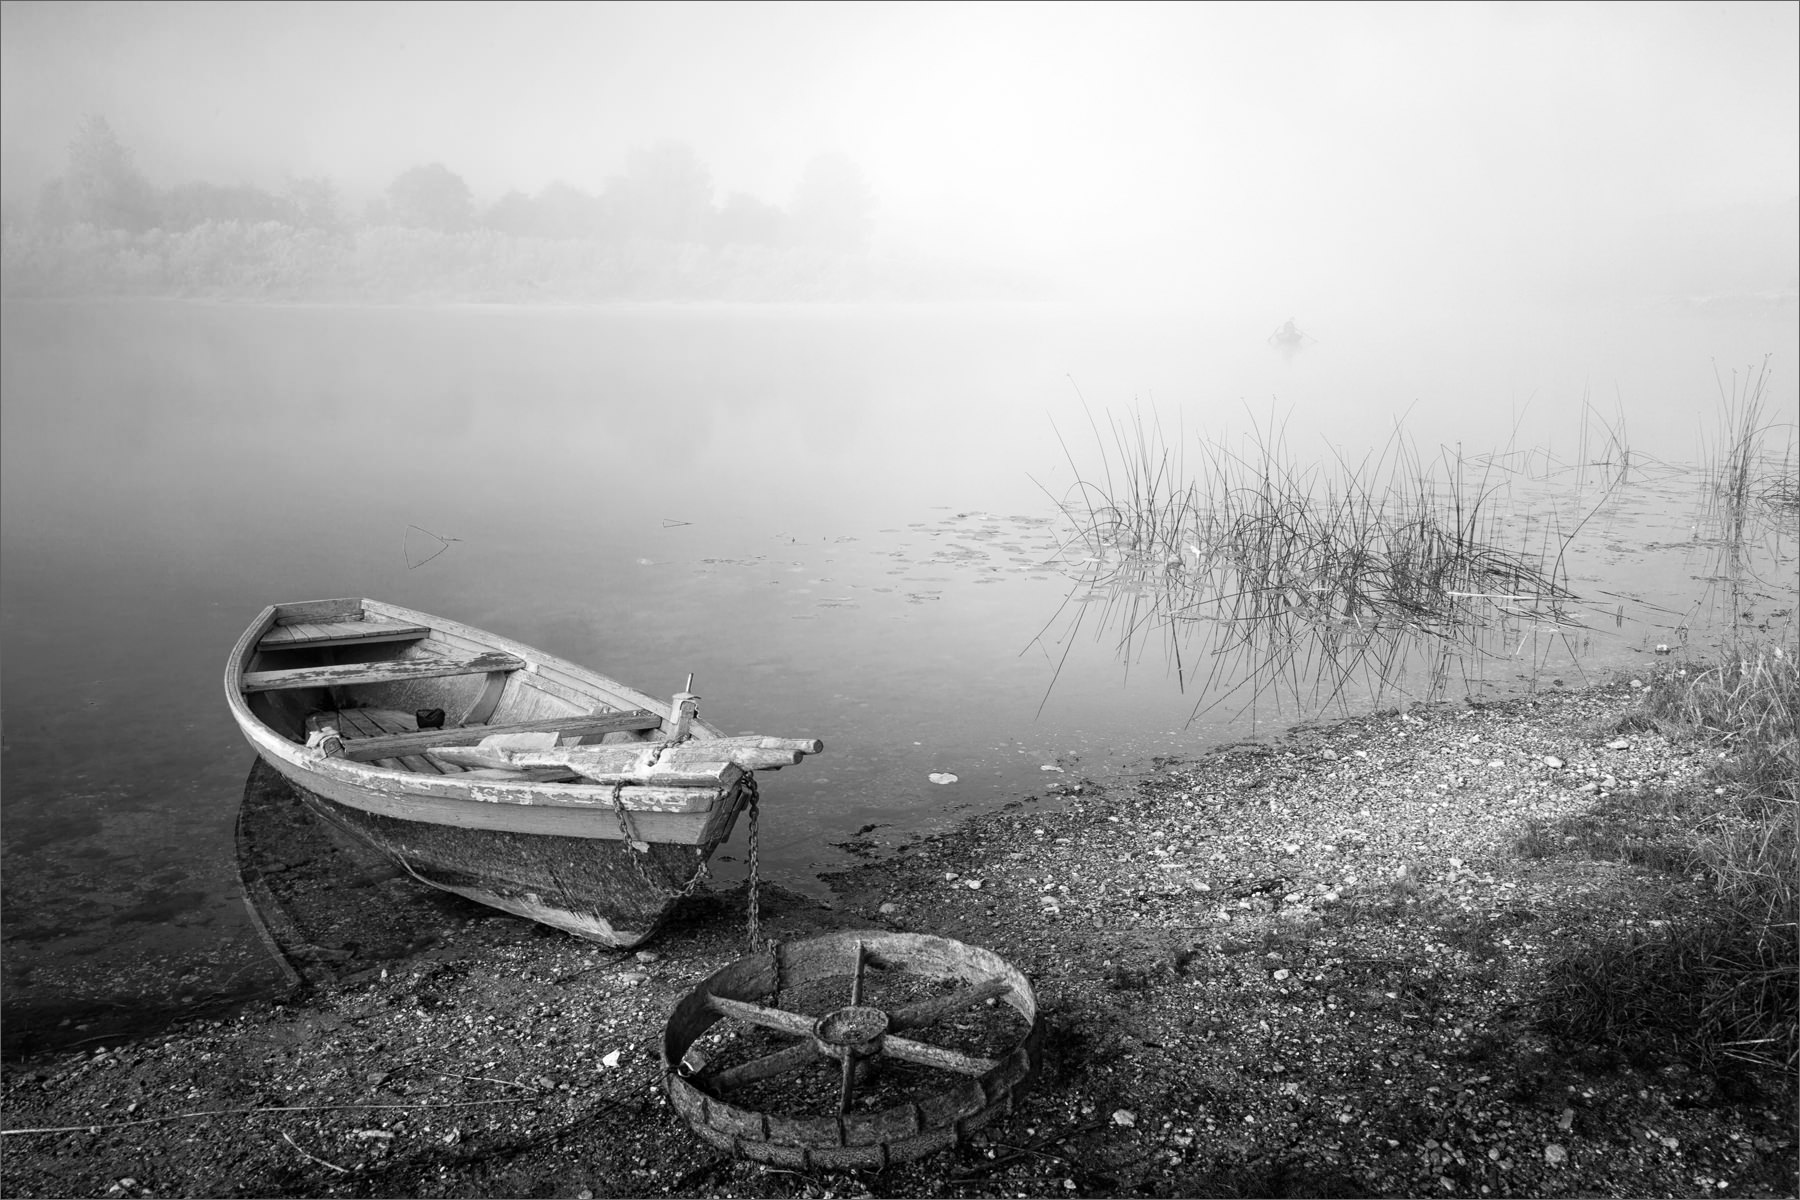 Картинка про утро, туман, реку, лодку...